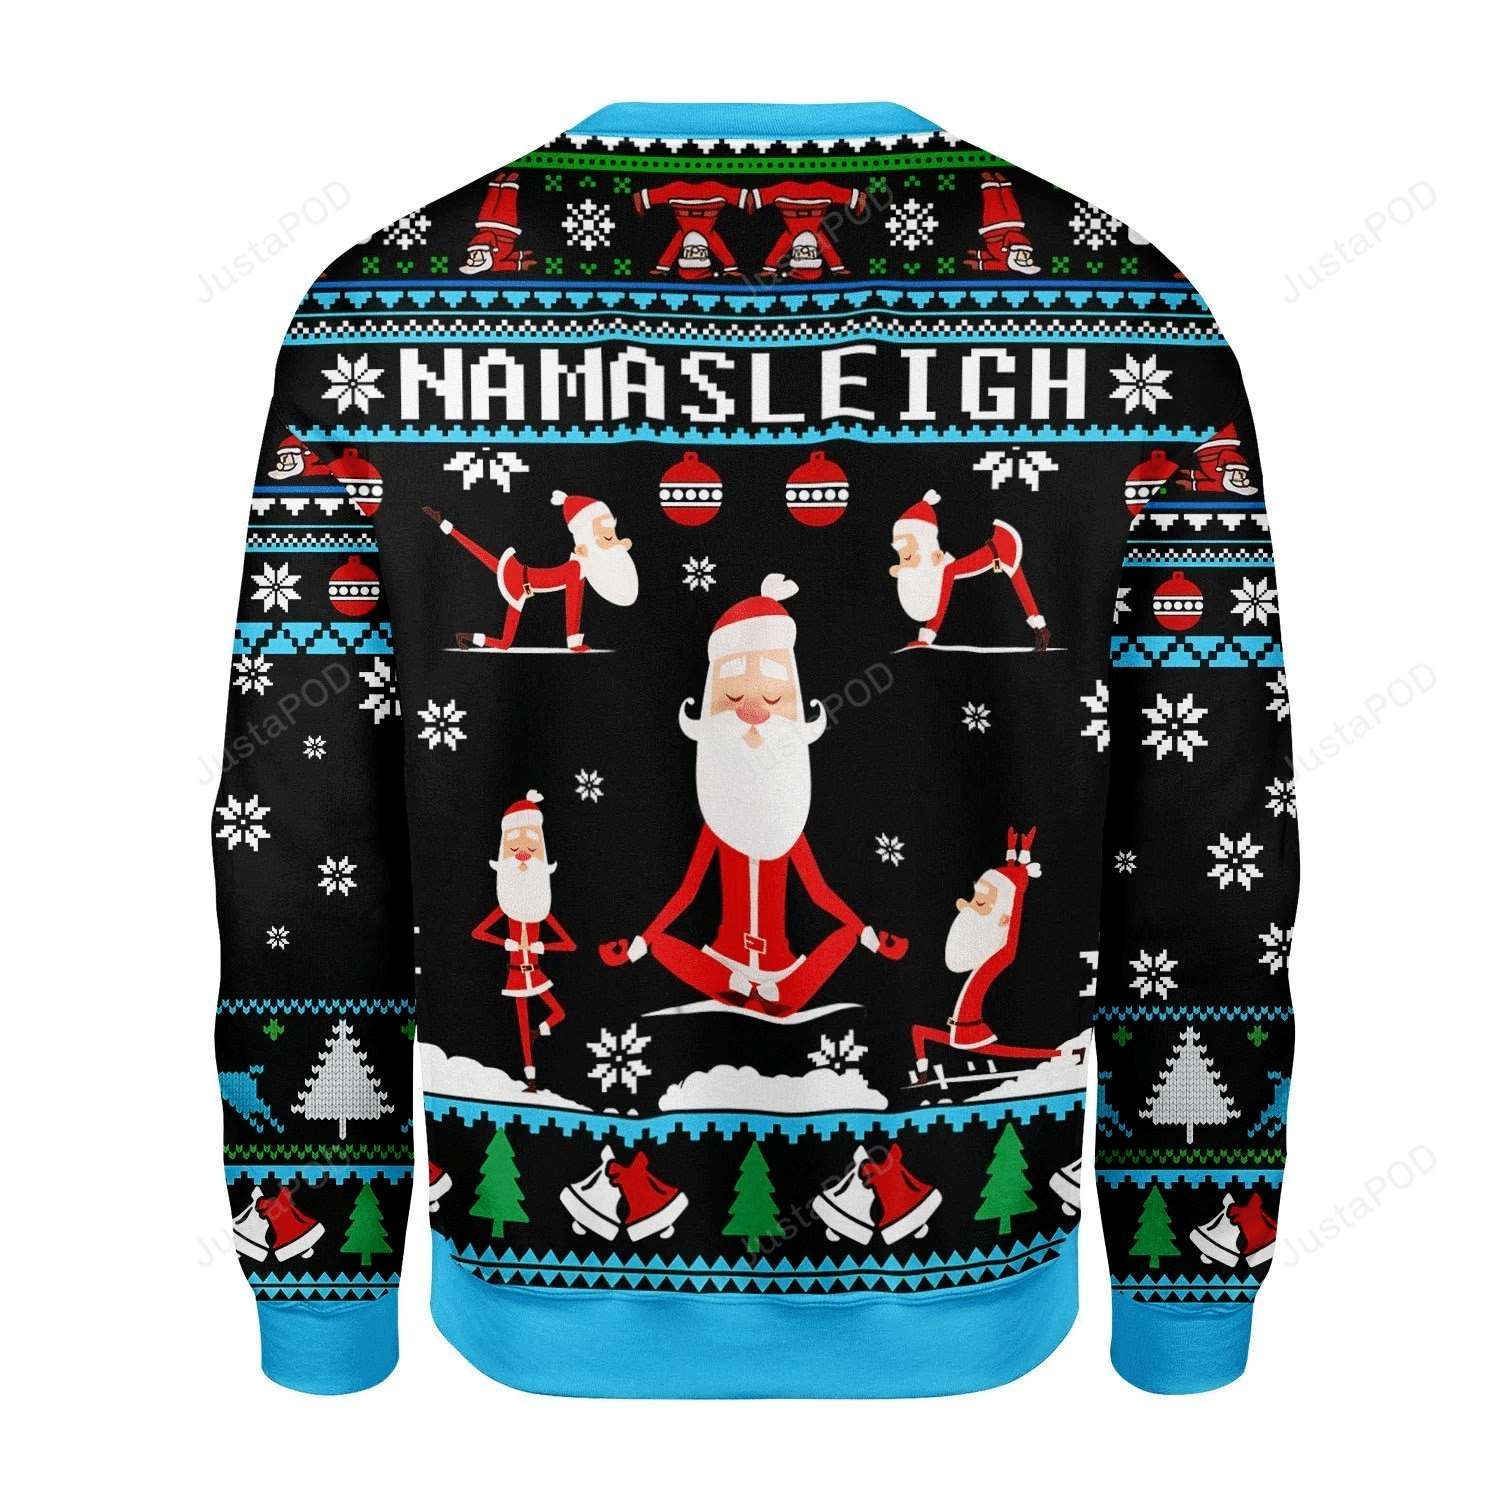 Merry Christmas Gearhomies Namasleigh Santa Ugly Christmas Sweater All Over